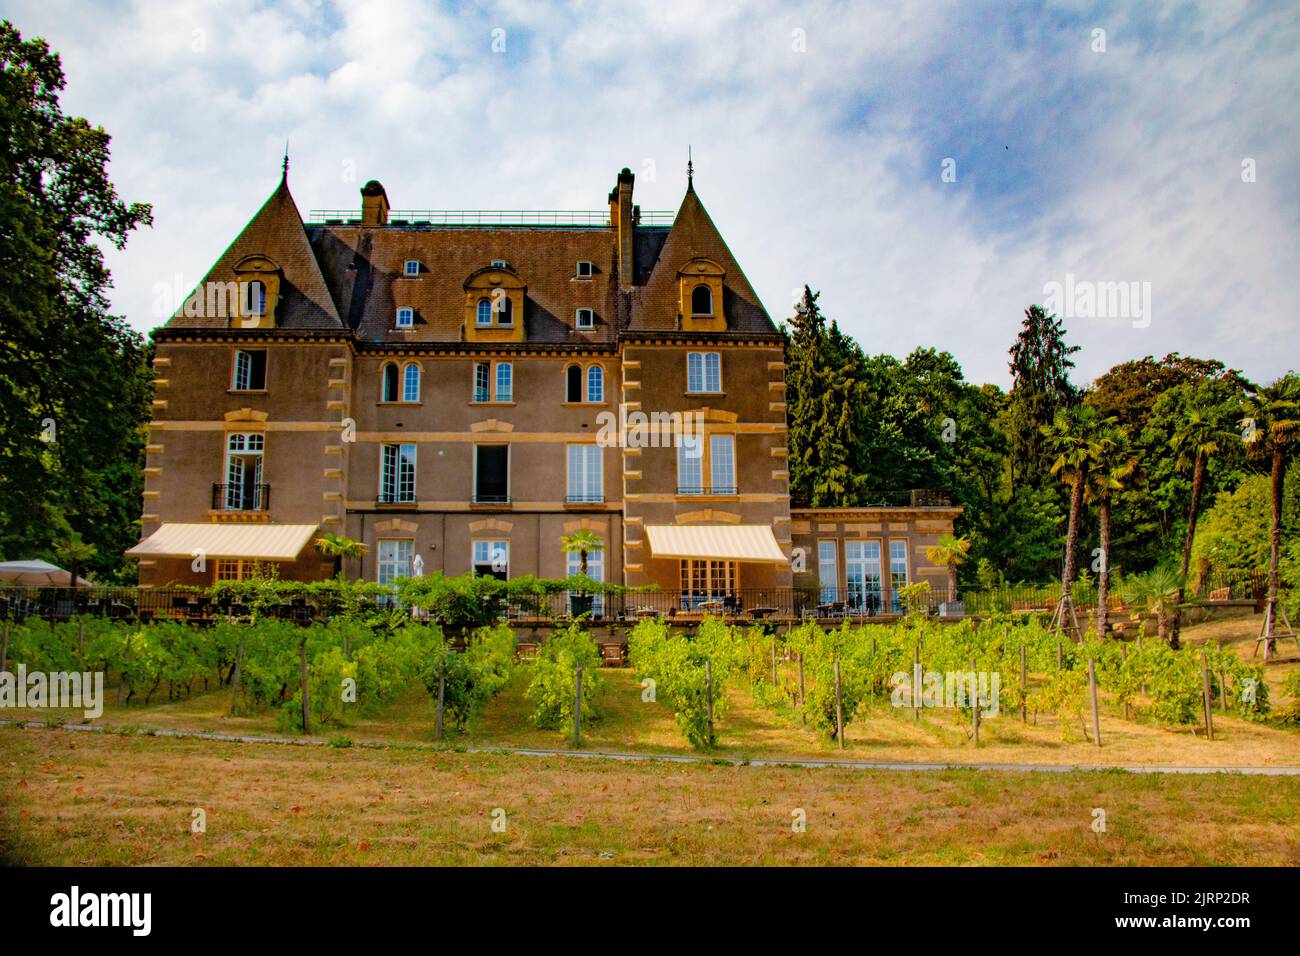 Le magnifique et imposant Ö Chateau Hotel and Restaurant, Hayange, France Banque D'Images